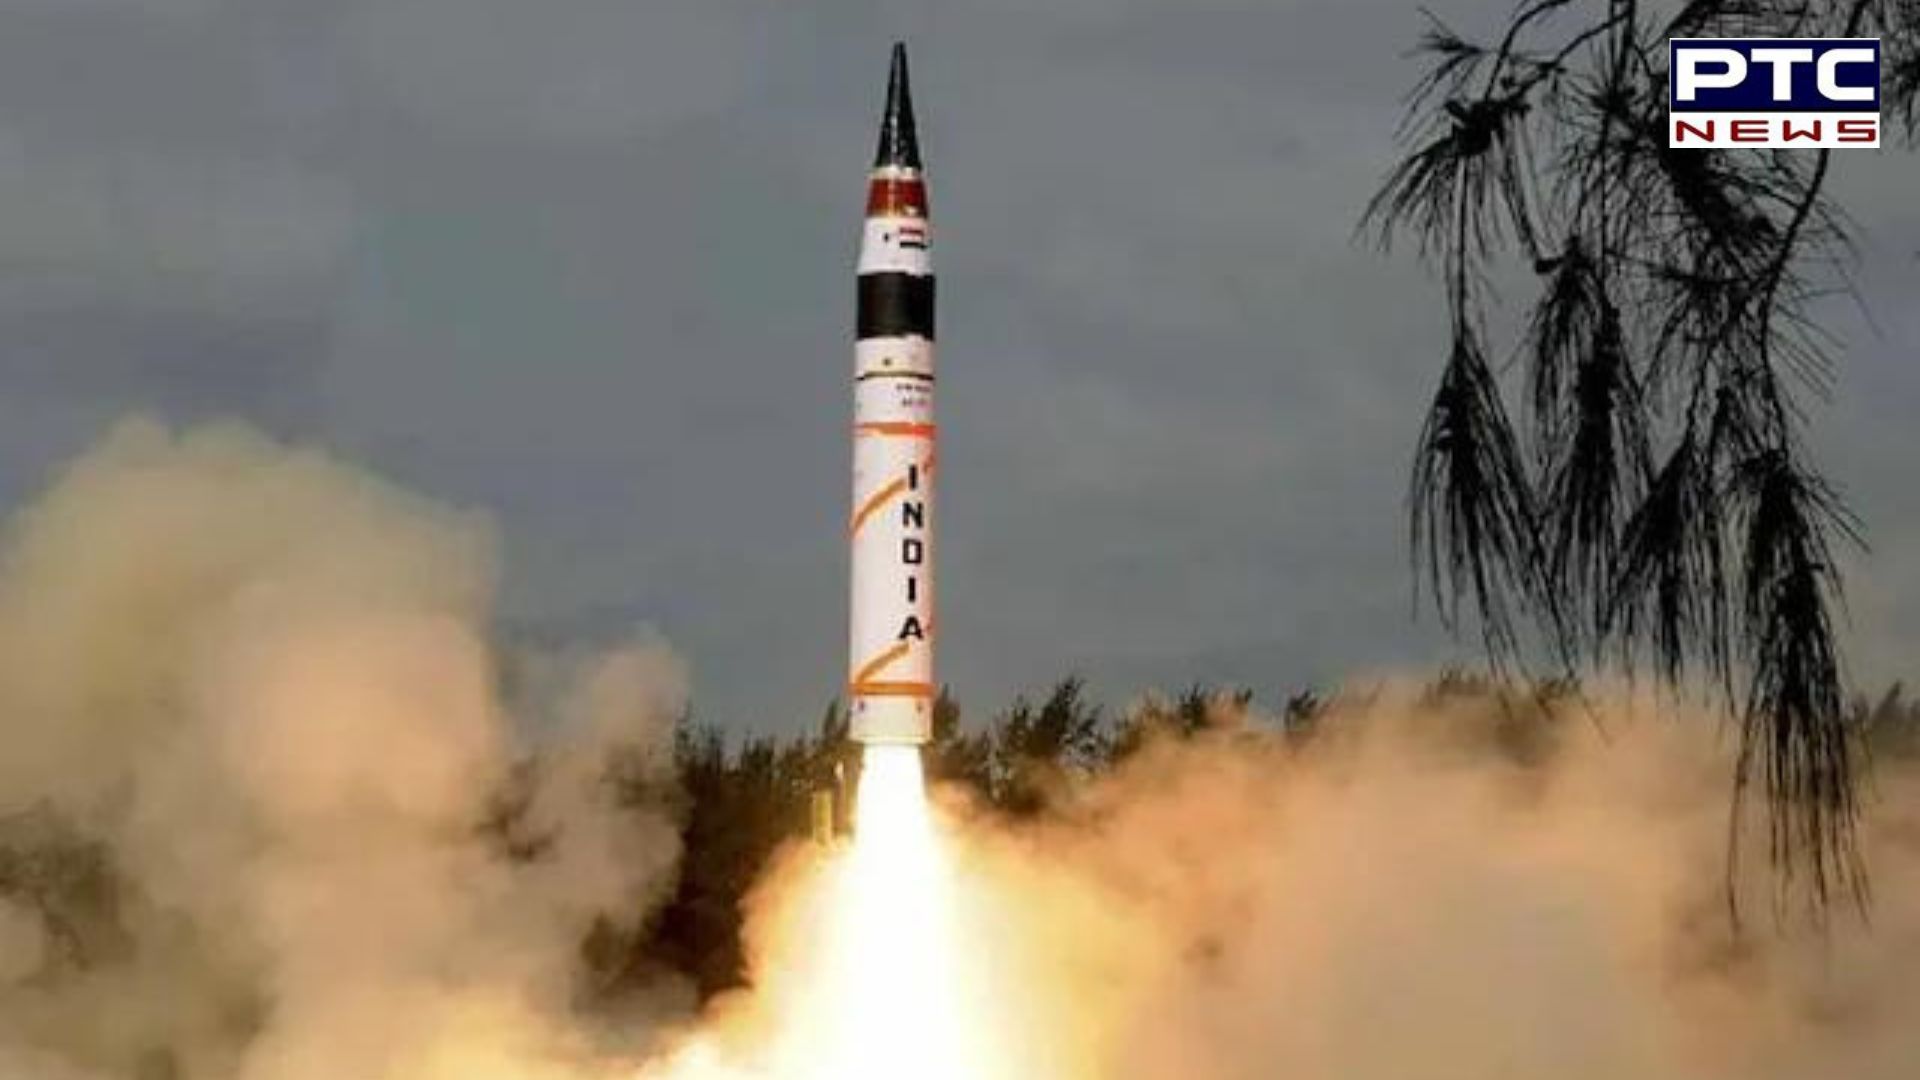 ਵੀਡੀਓ: Agni-5 ਮਿਜ਼ਾਈਲ ਦਾ ਸਫਲ ਪ੍ਰੀਖਣ, PM ਮੋਦੀ ਨੇ DRDO ਨੂੰ ਦਿੱਤੀ ਵਧਾਈ